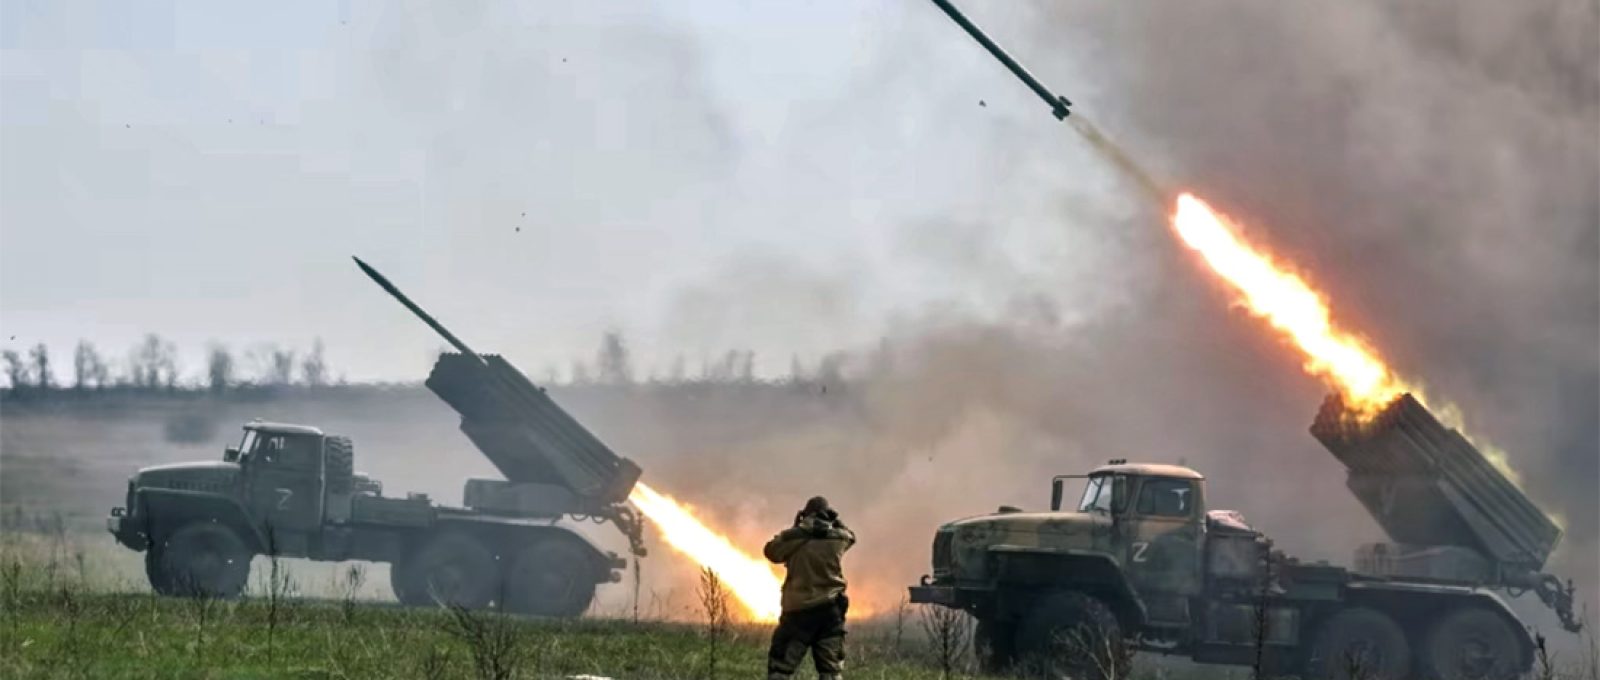 Artilharia russa disparando (Sergei Bobylev/Tass).